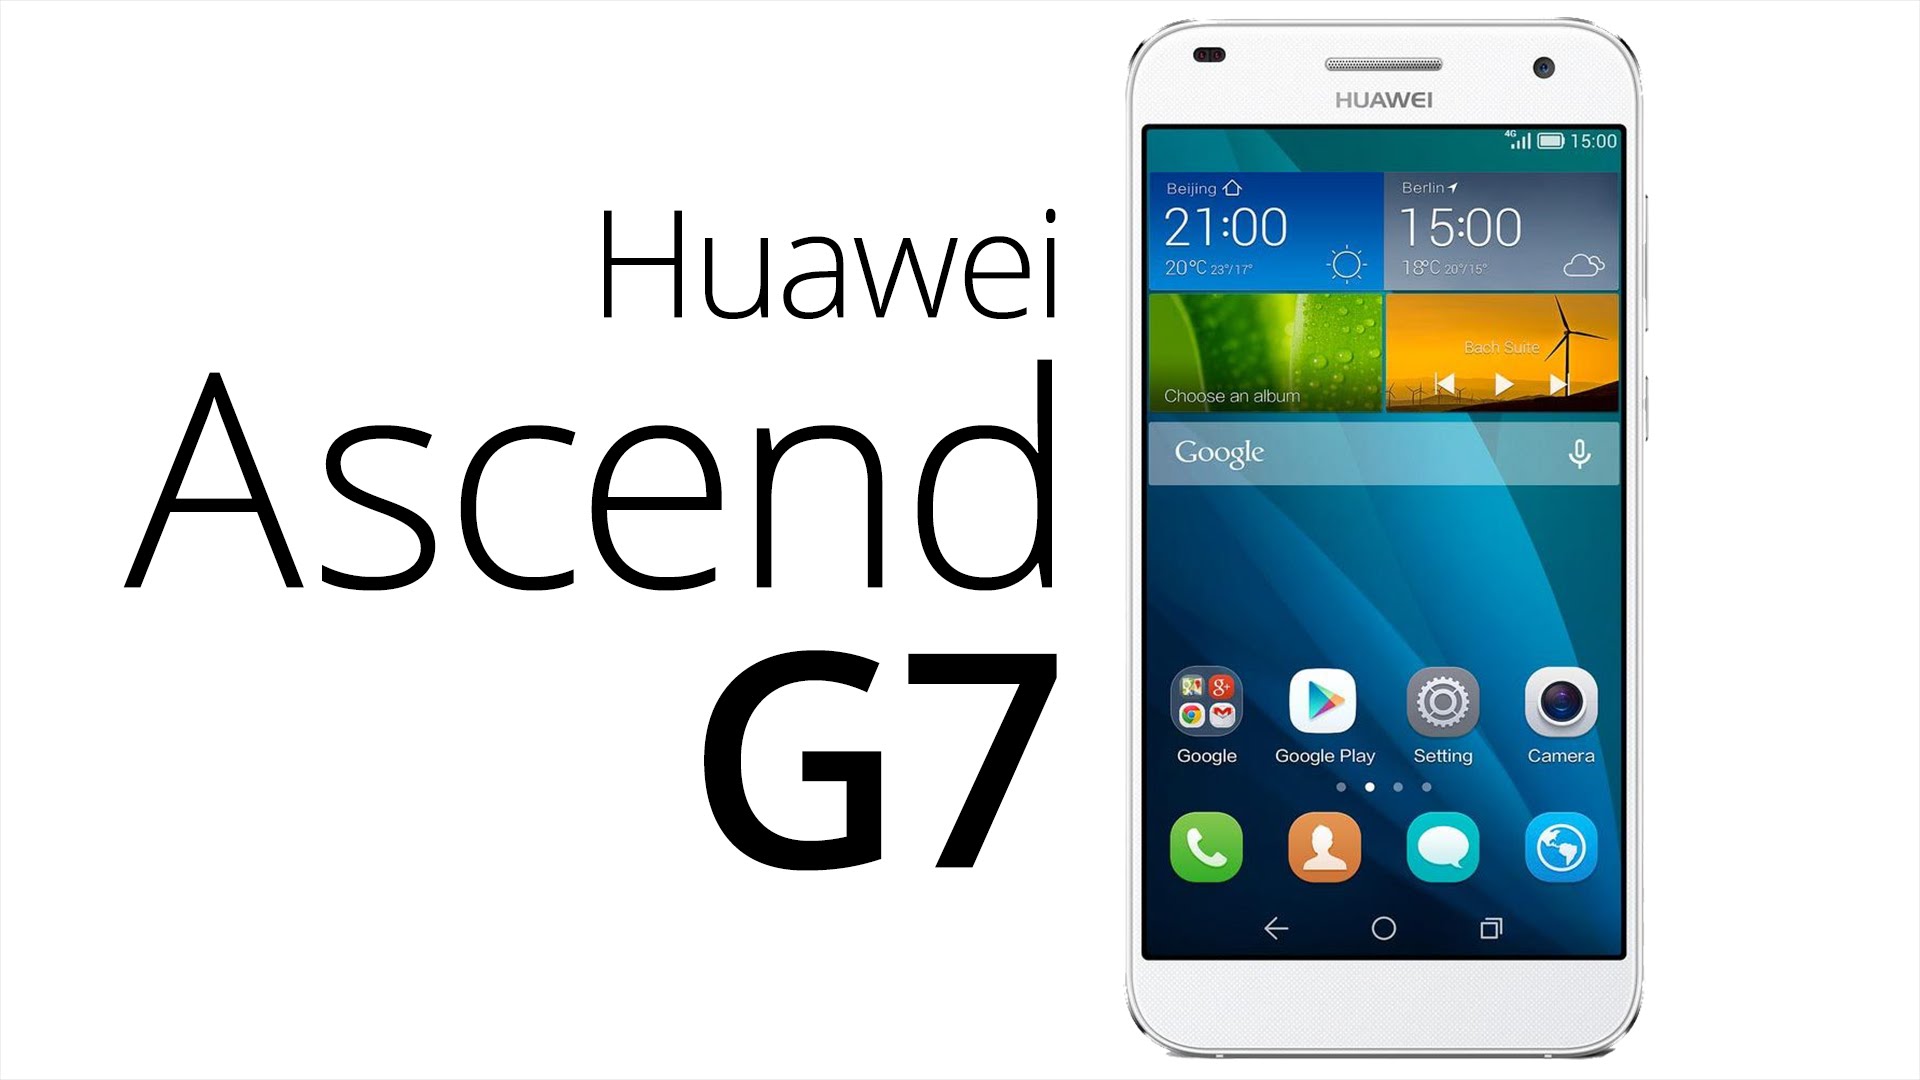 Хуавей андроид 7. Huawei g7. Huawei Android 5.1. Хуавей AFO. Huawei 1500 зшчдфи х1.